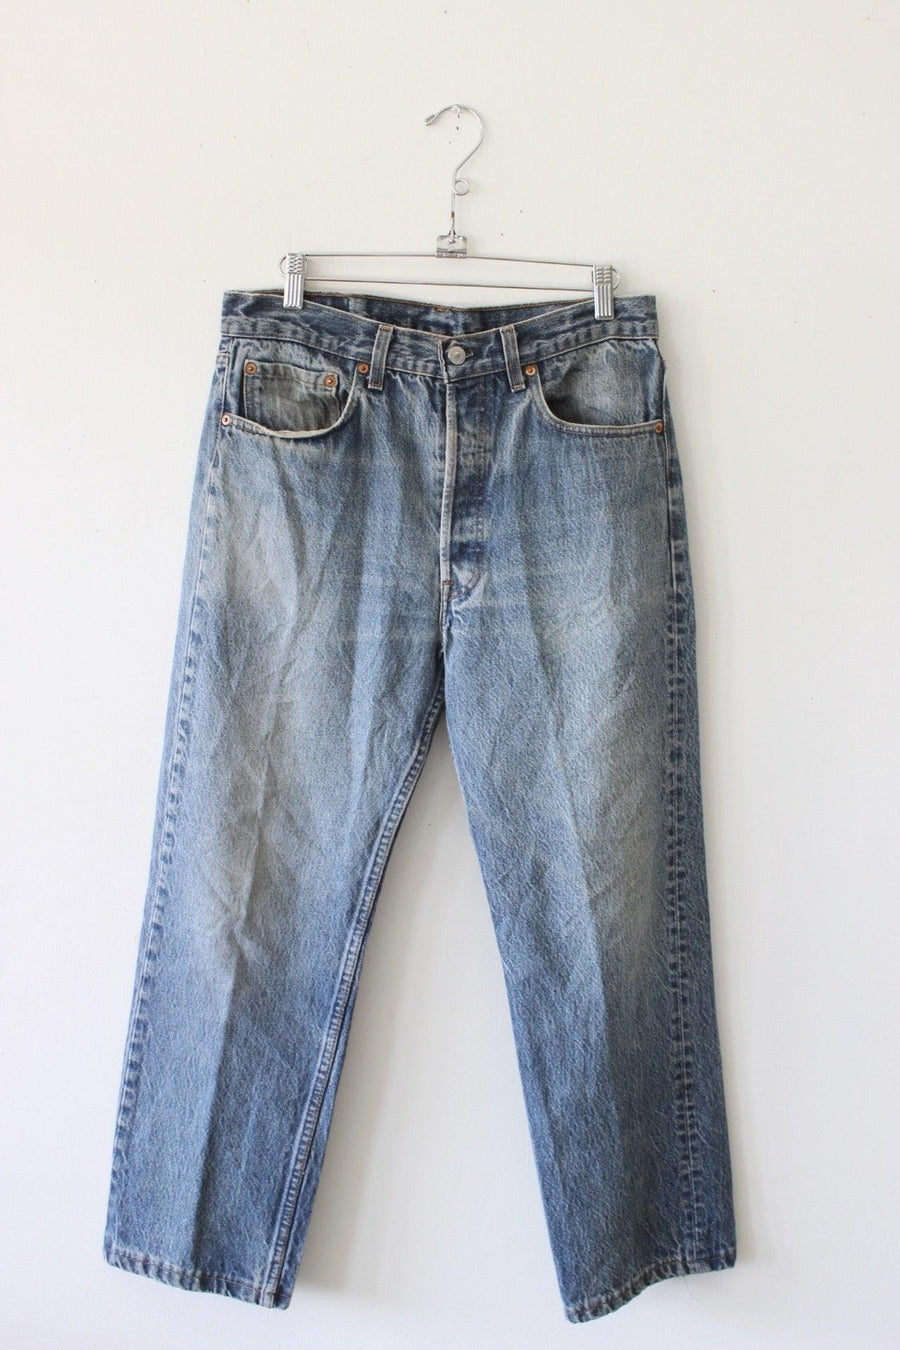 Levi's 501 Jeans by Luna B Vintage - FINAL SALE – SHOPLUNAB